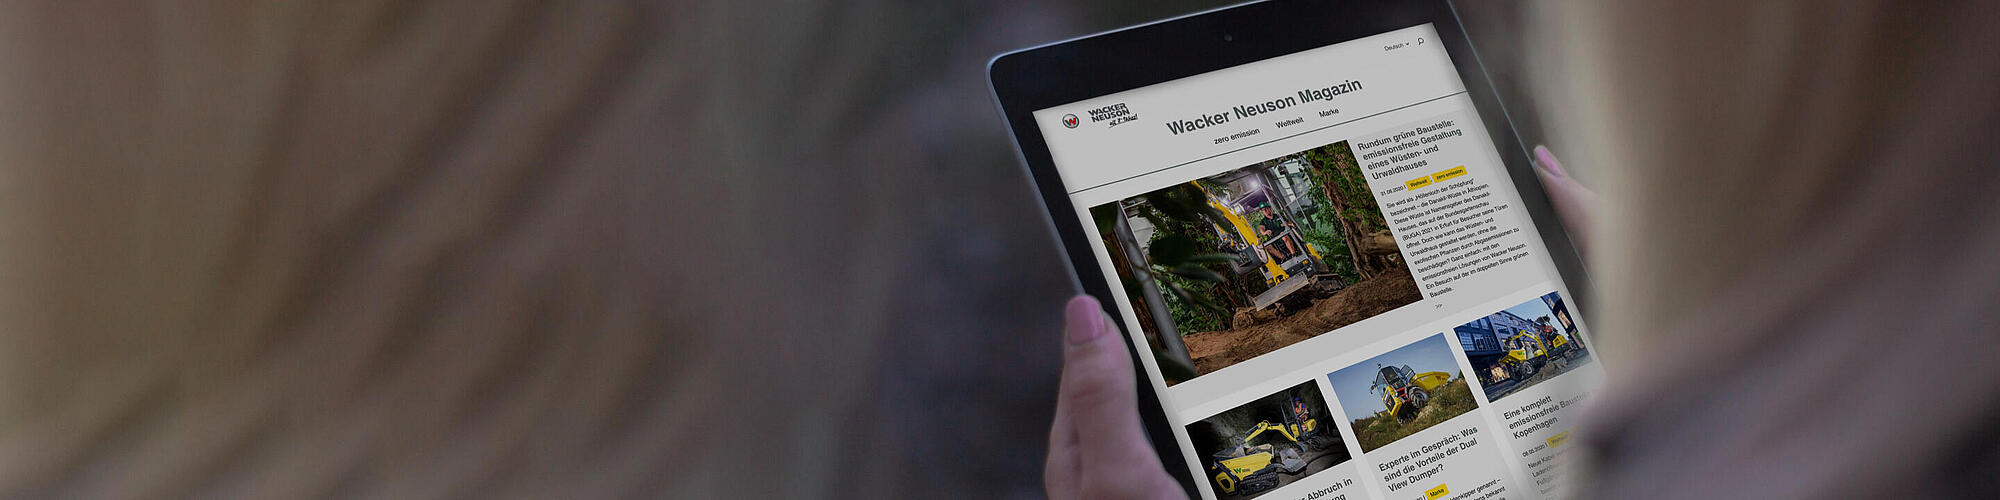 Wacker Neuson Online Magazine op een tablet.